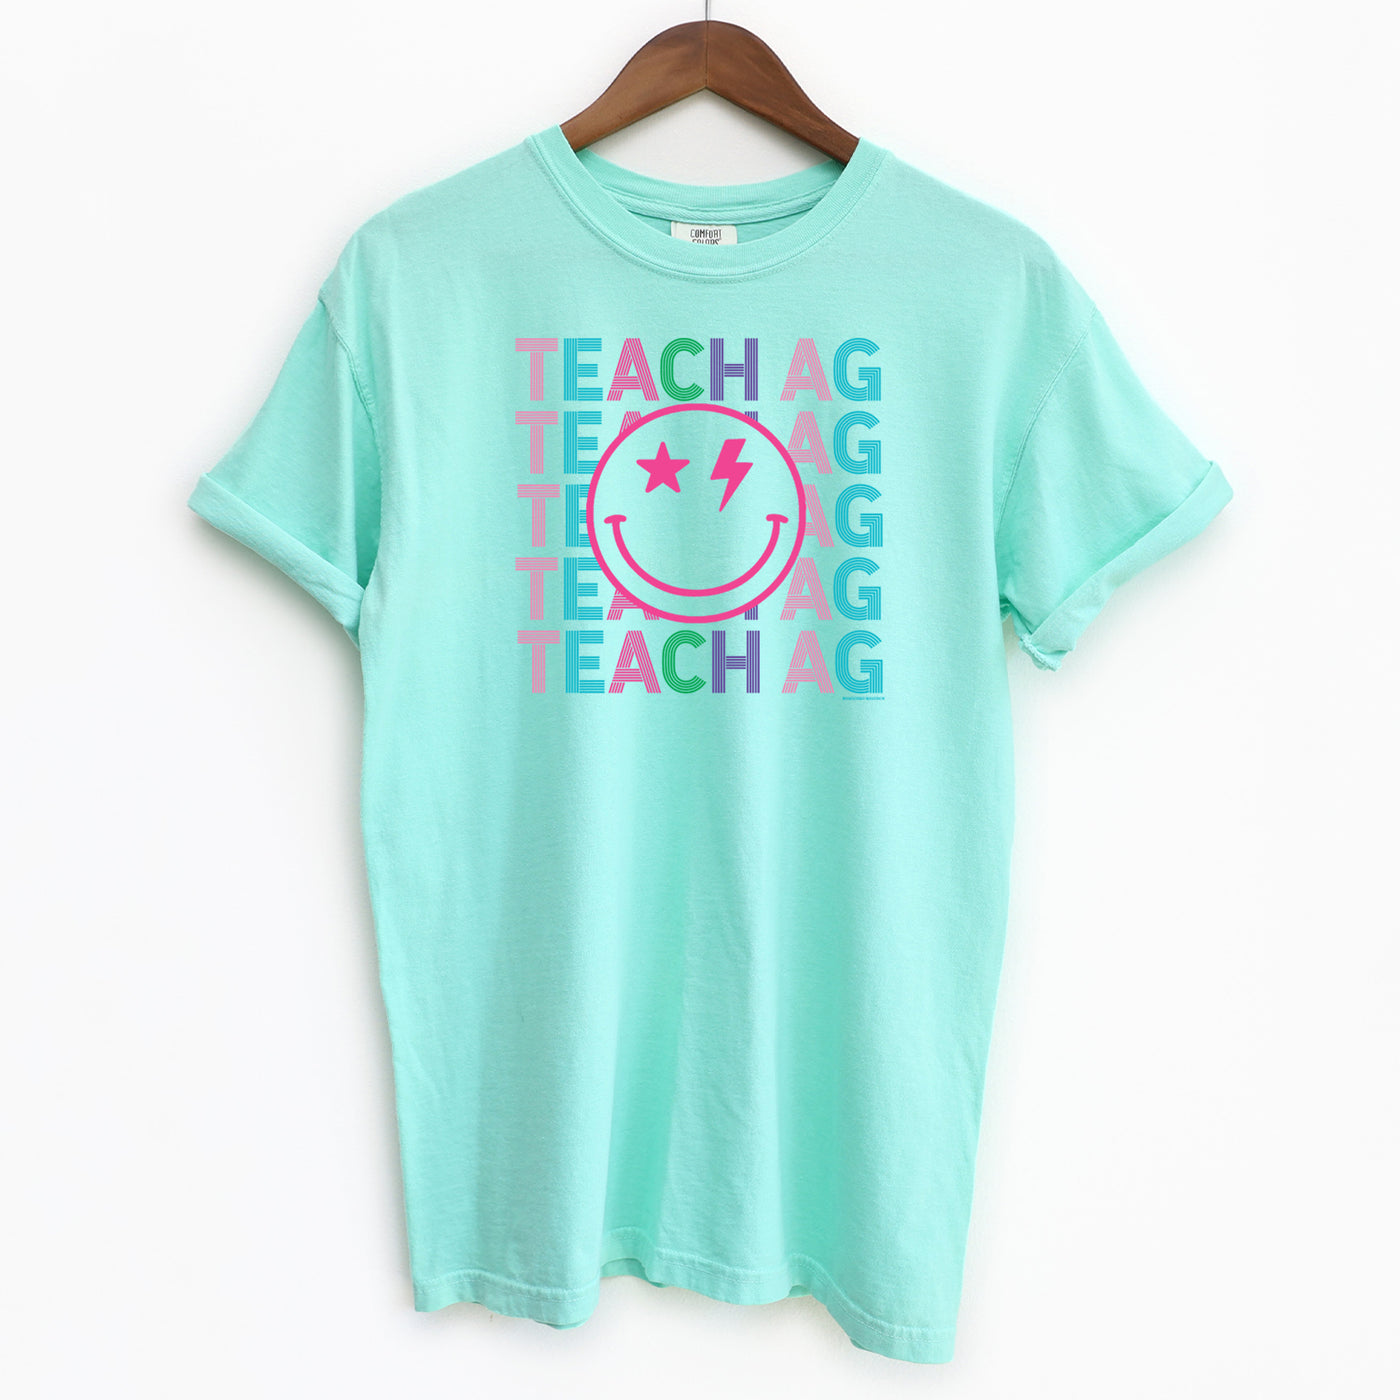 Teach Ag Line Smile ComfortWash/ComfortColor T-Shirt (S-4XL) - Multiple Colors!